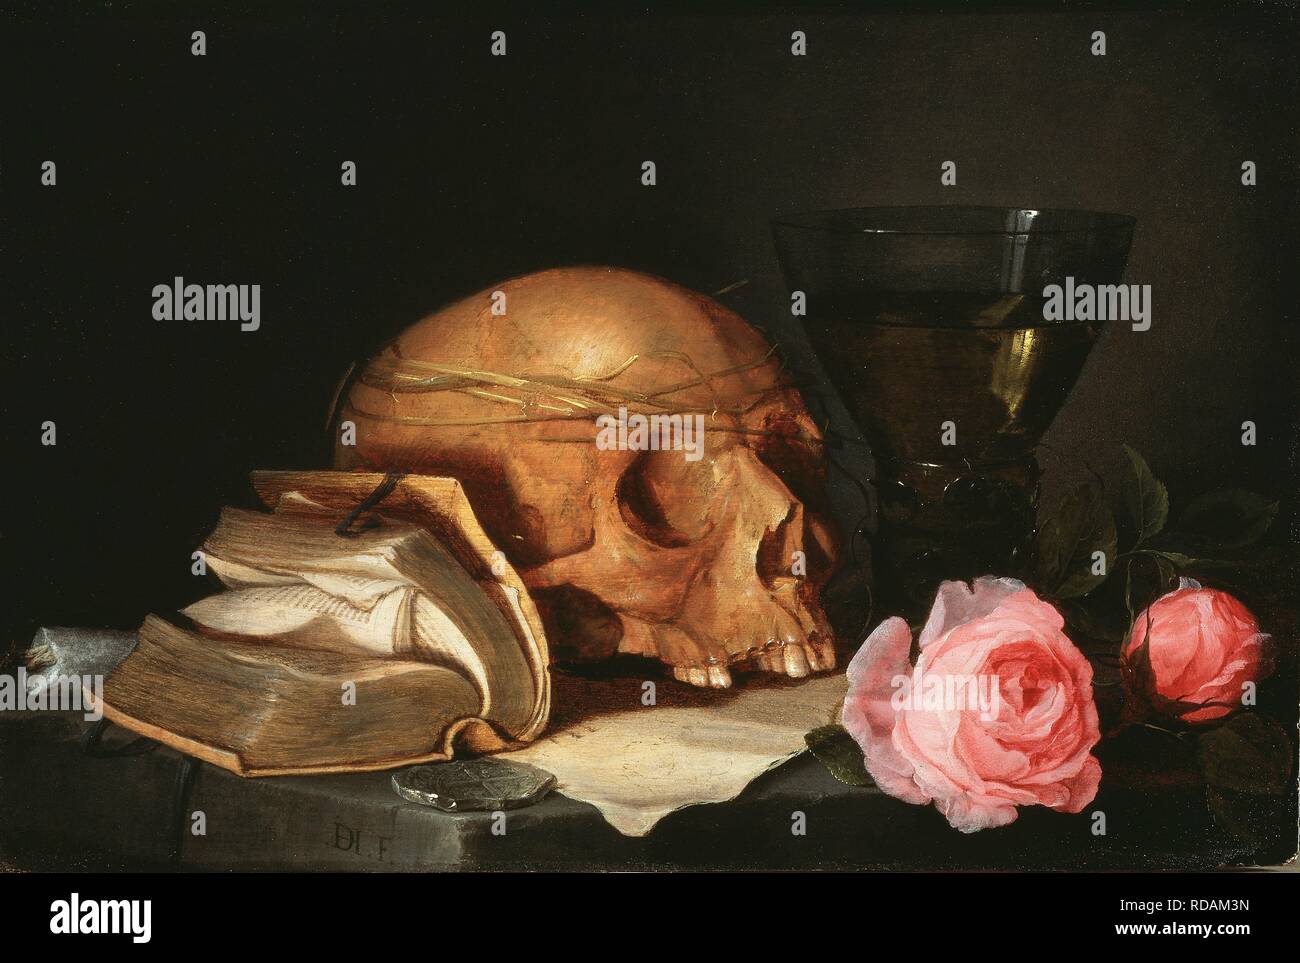 Vanitas ancora in vita con un cranio di un libro e di rose. Museo: Nationalmuseum di Stoccolma. Autore: HEEM, JAN DAVIDSZ DE. Foto Stock